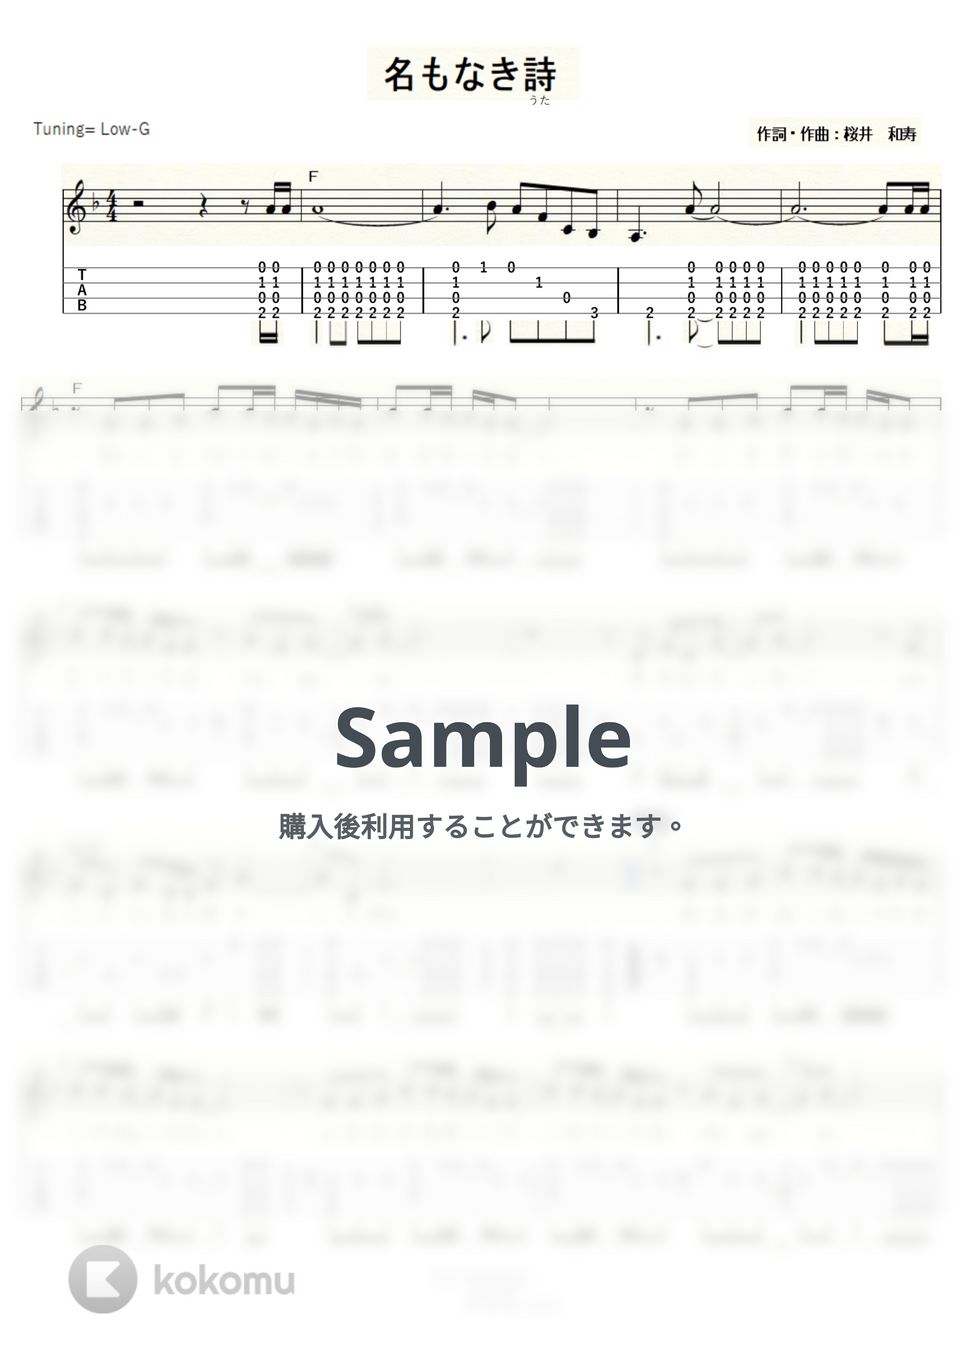 Mr.Children - 名もなき詩 (ｳｸﾚﾚｿﾛ/Low-G/中級) by ukulelepapa